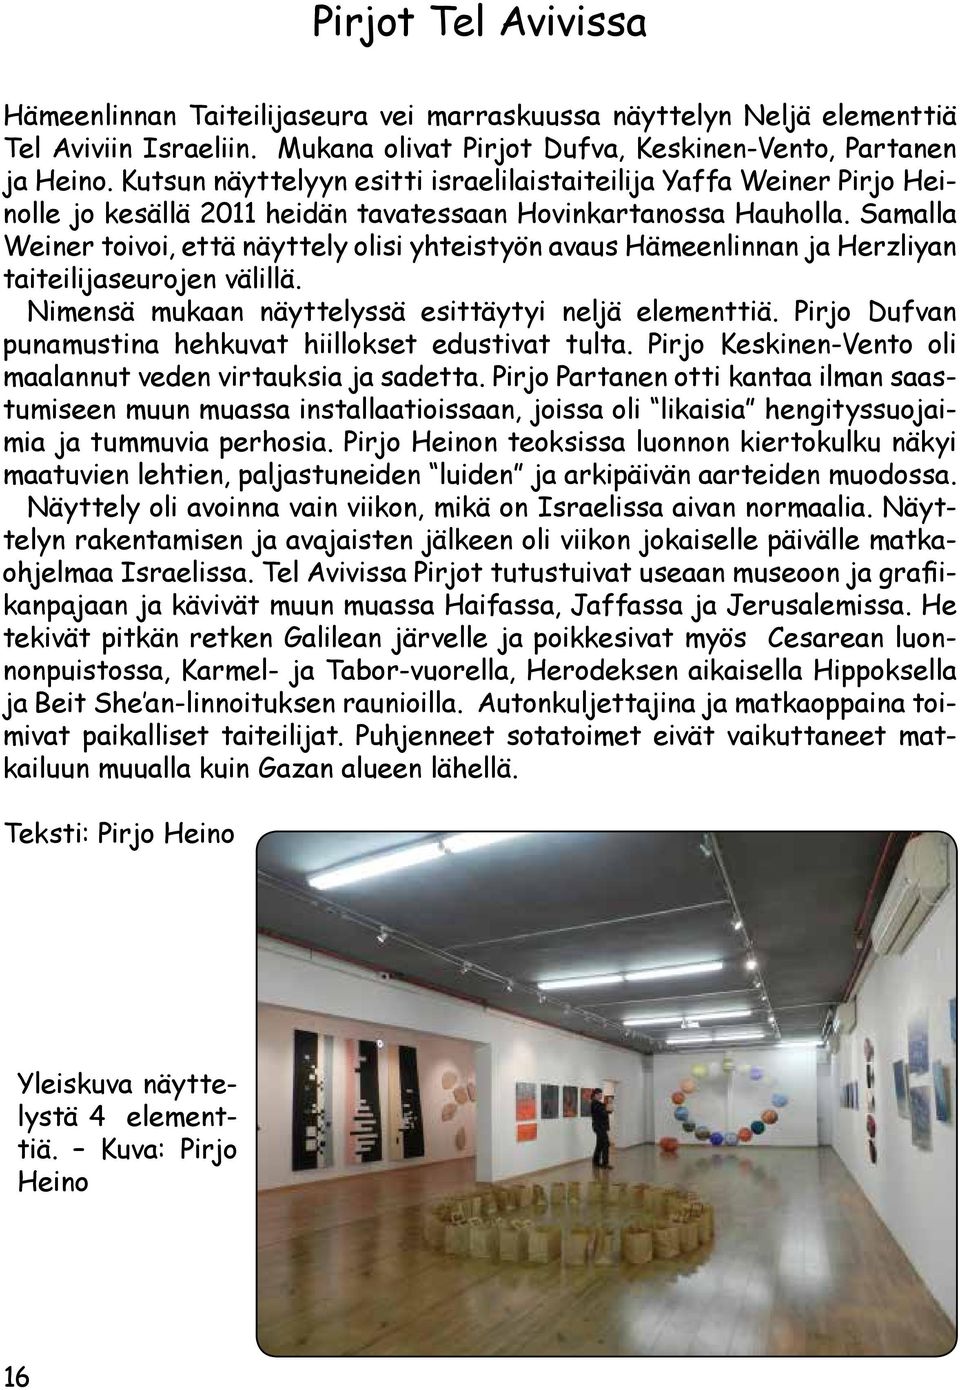 Samalla Weiner toivoi, että näyttely olisi yhteistyön avaus Hämeenlinnan ja Herzliyan taiteilijaseurojen välillä. Nimensä mukaan näyttelyssä esittäytyi neljä elementtiä.